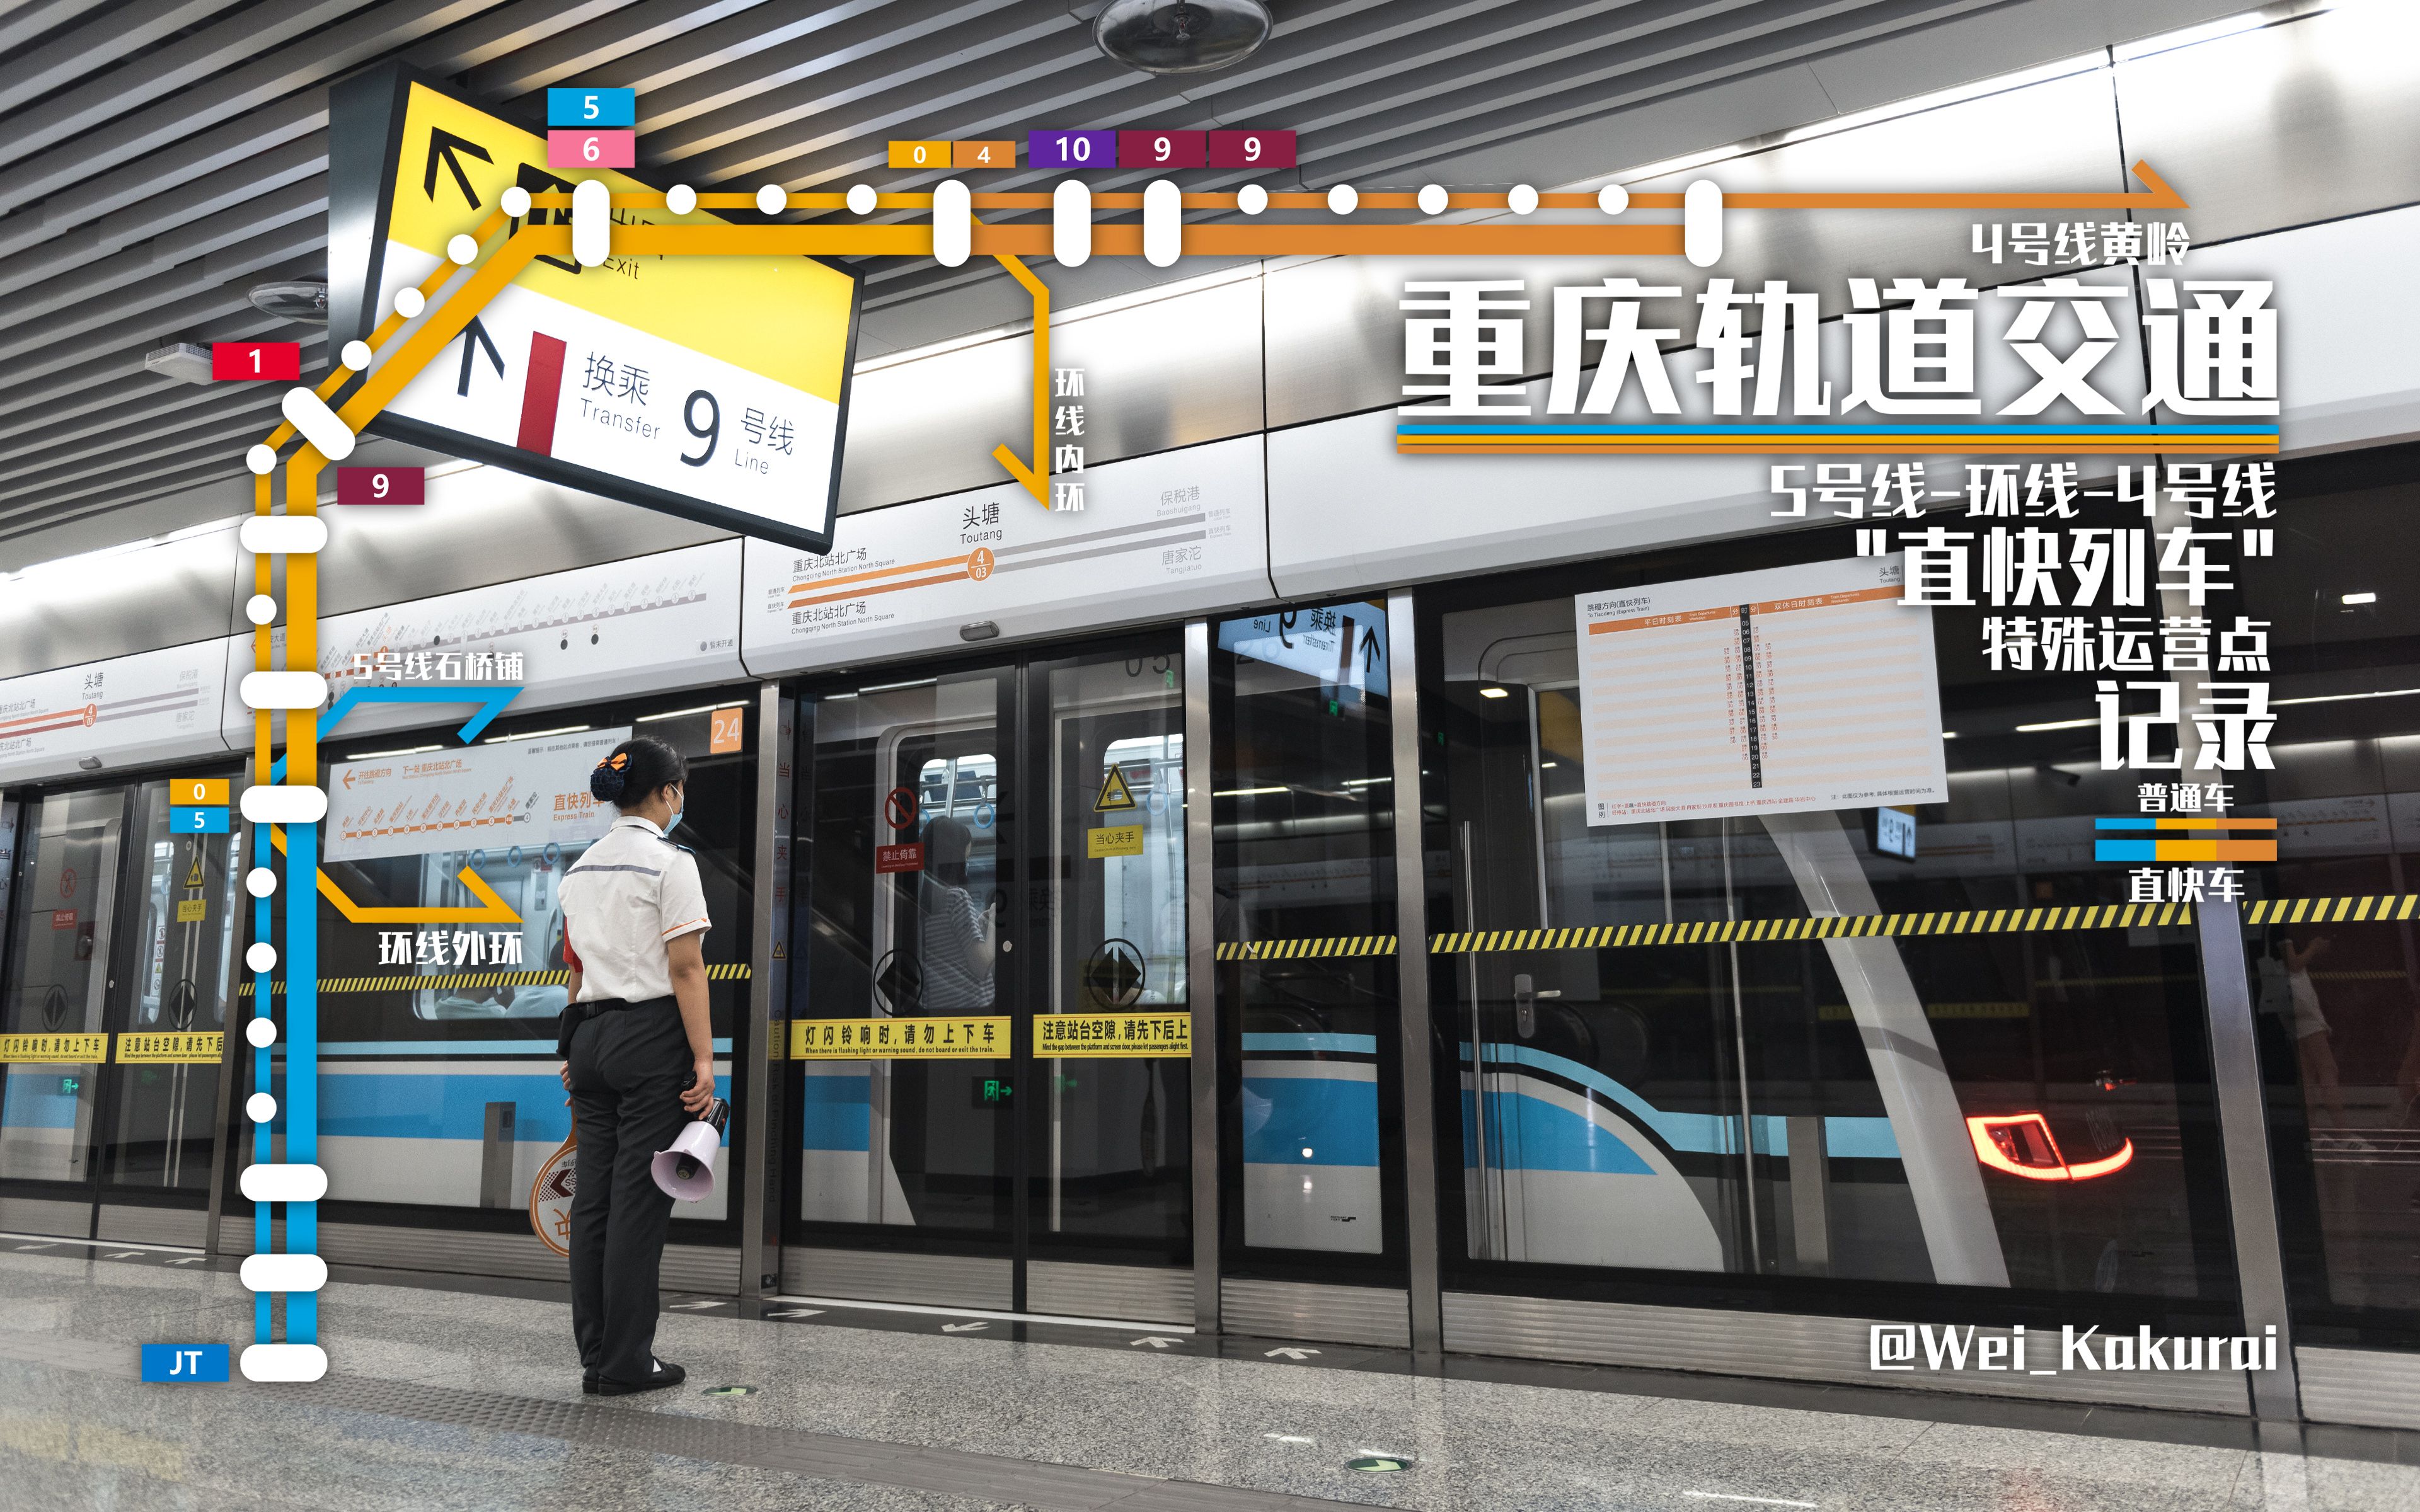 重庆轻轨环线线路站点图片